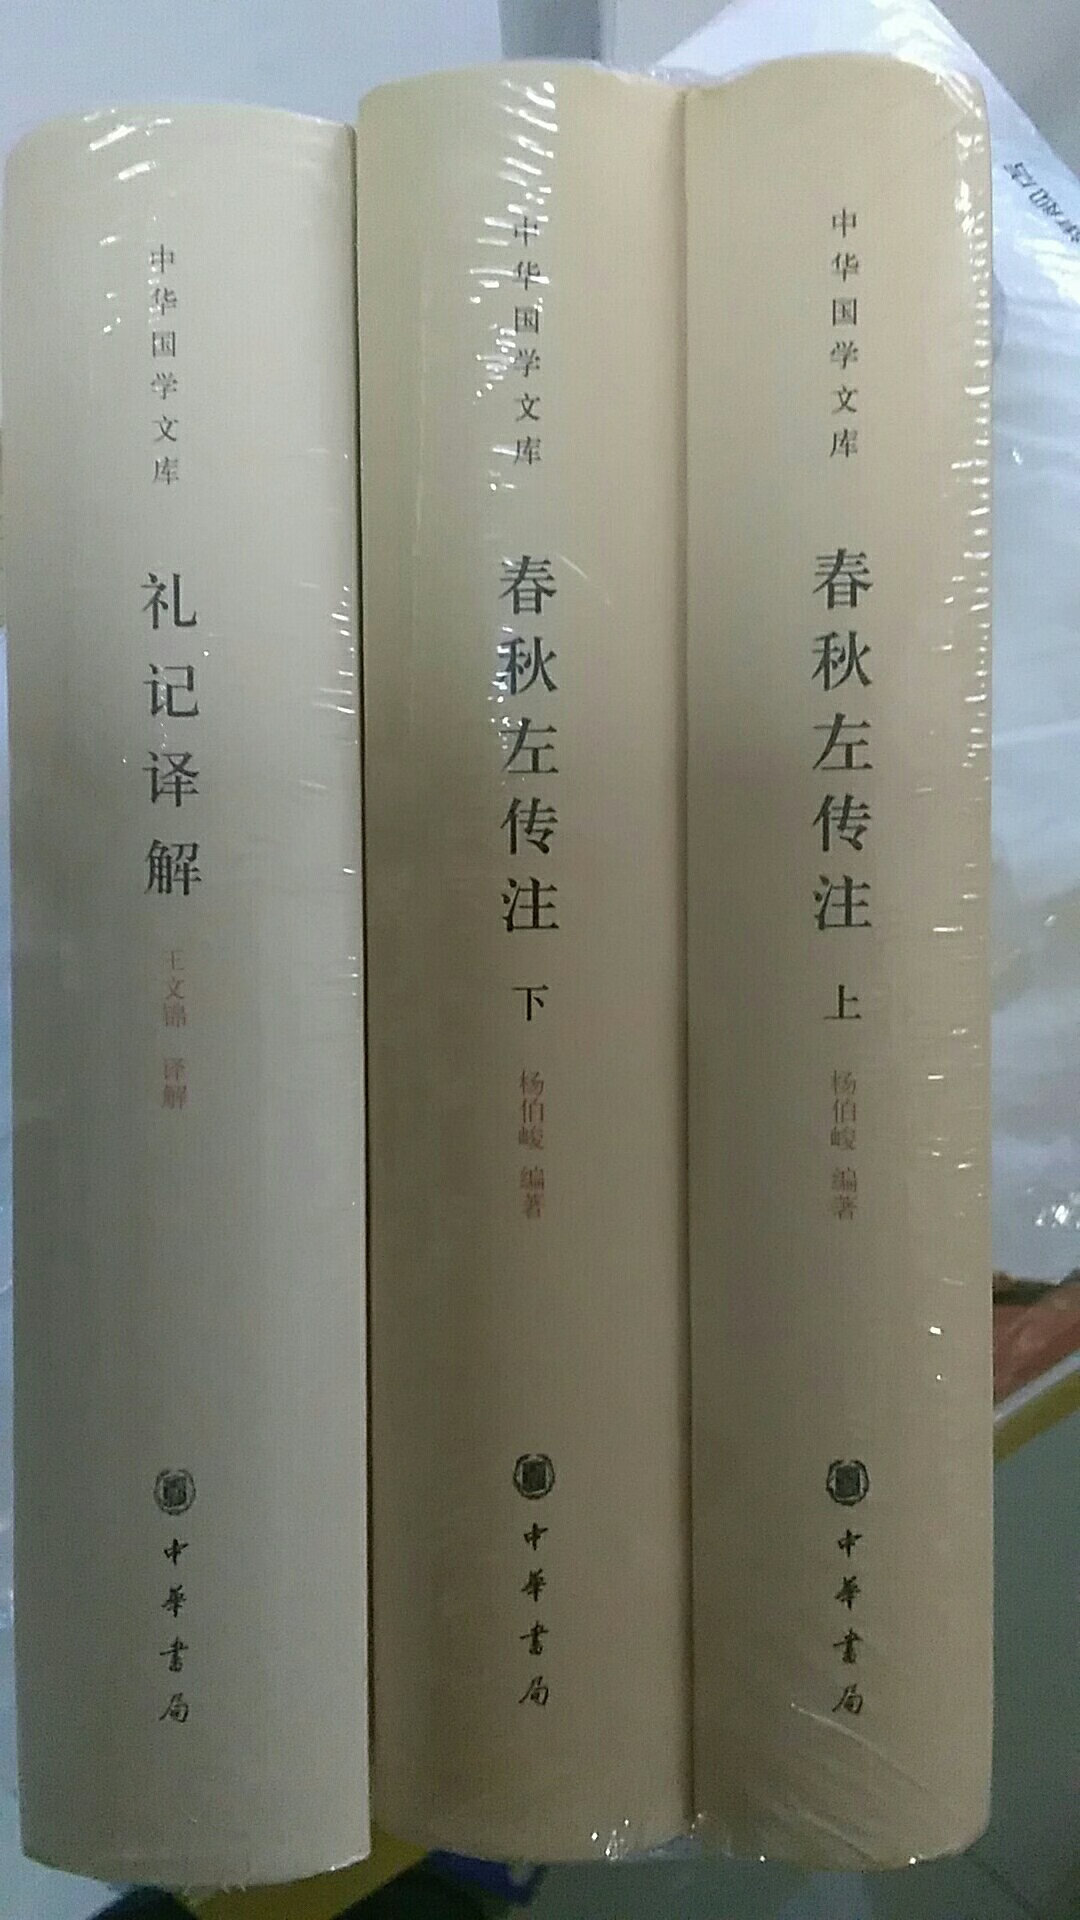 “四书五经”都被我买回来了，当然并不是同一个系列，但是都尽可能买的最佳版本。中华书局的质量毋庸置疑。